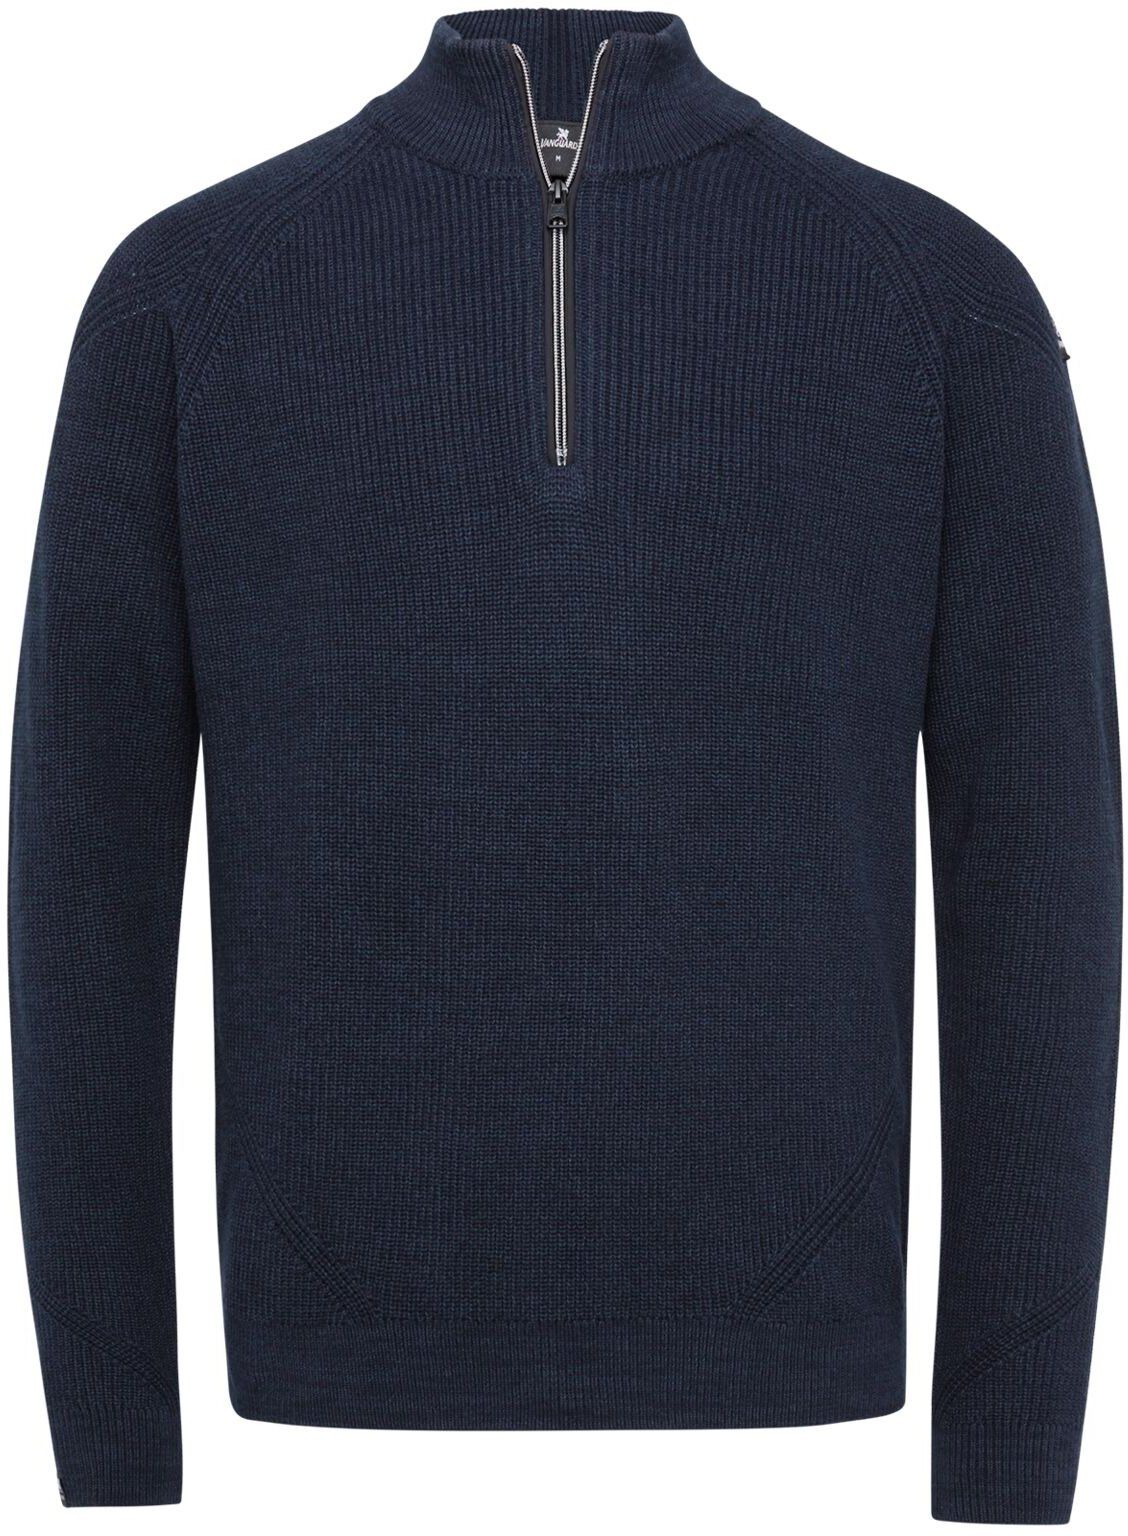 Vanguard Pullover Knitted Half Zip Navy Blue Dark Blue size L